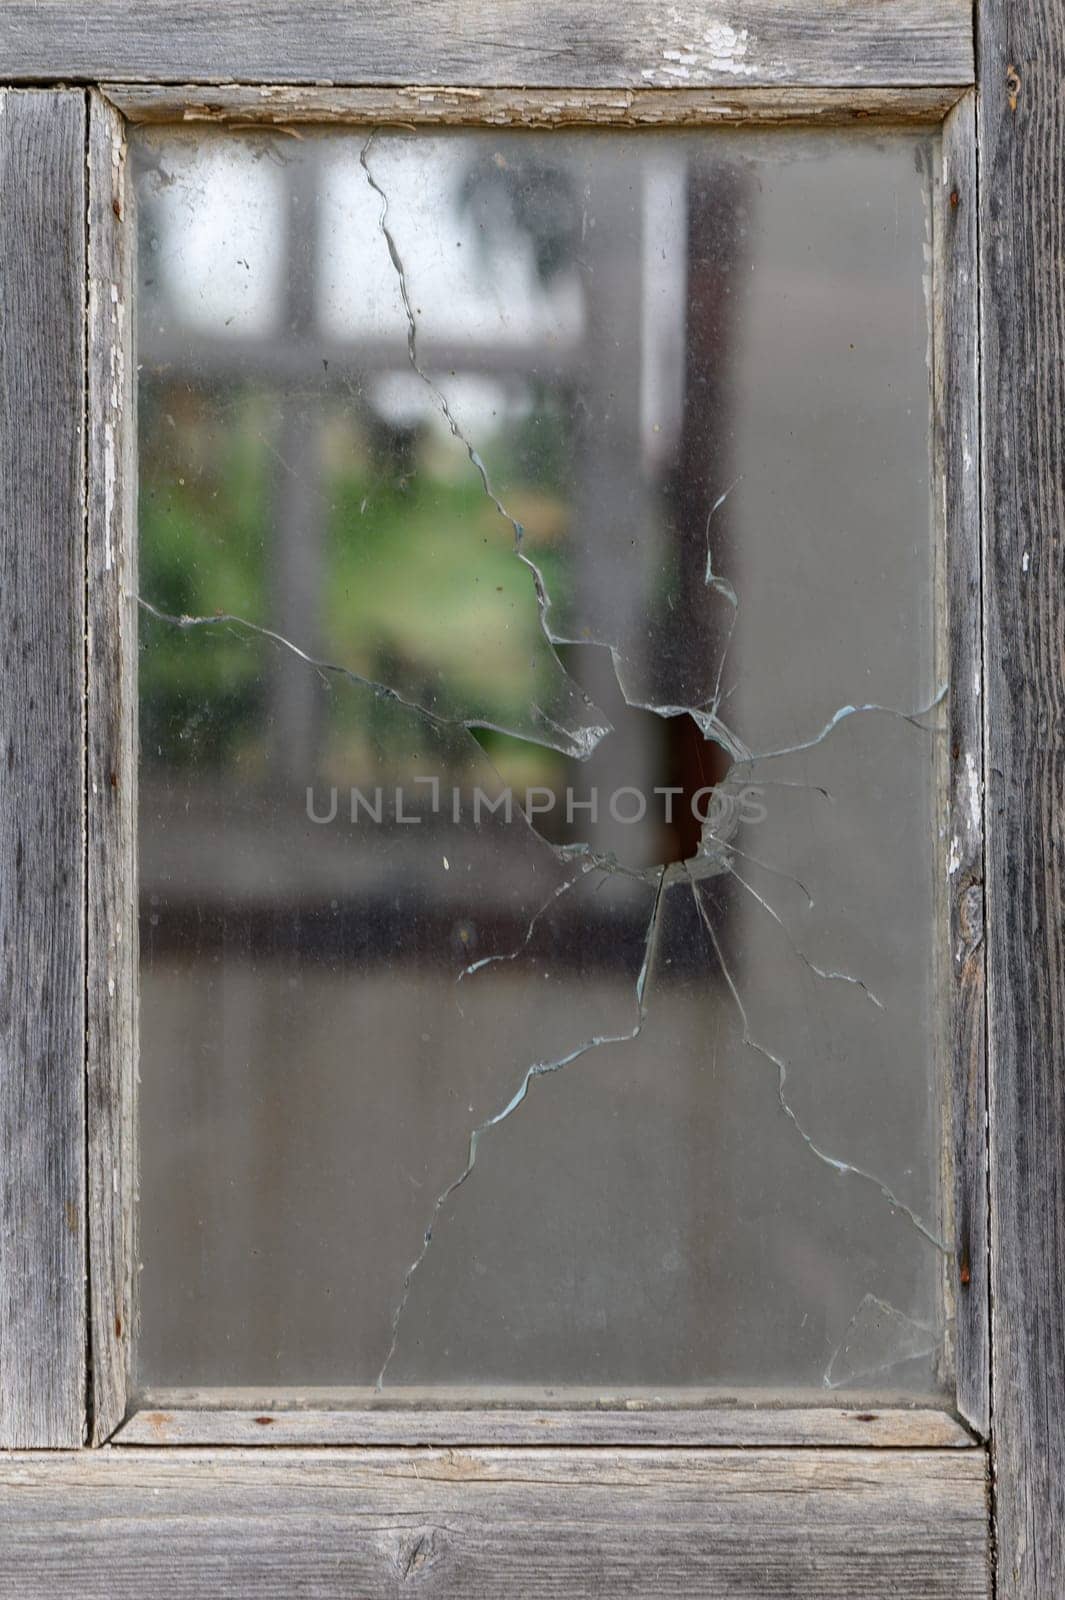 Broken window in close up 1 by Mixa74